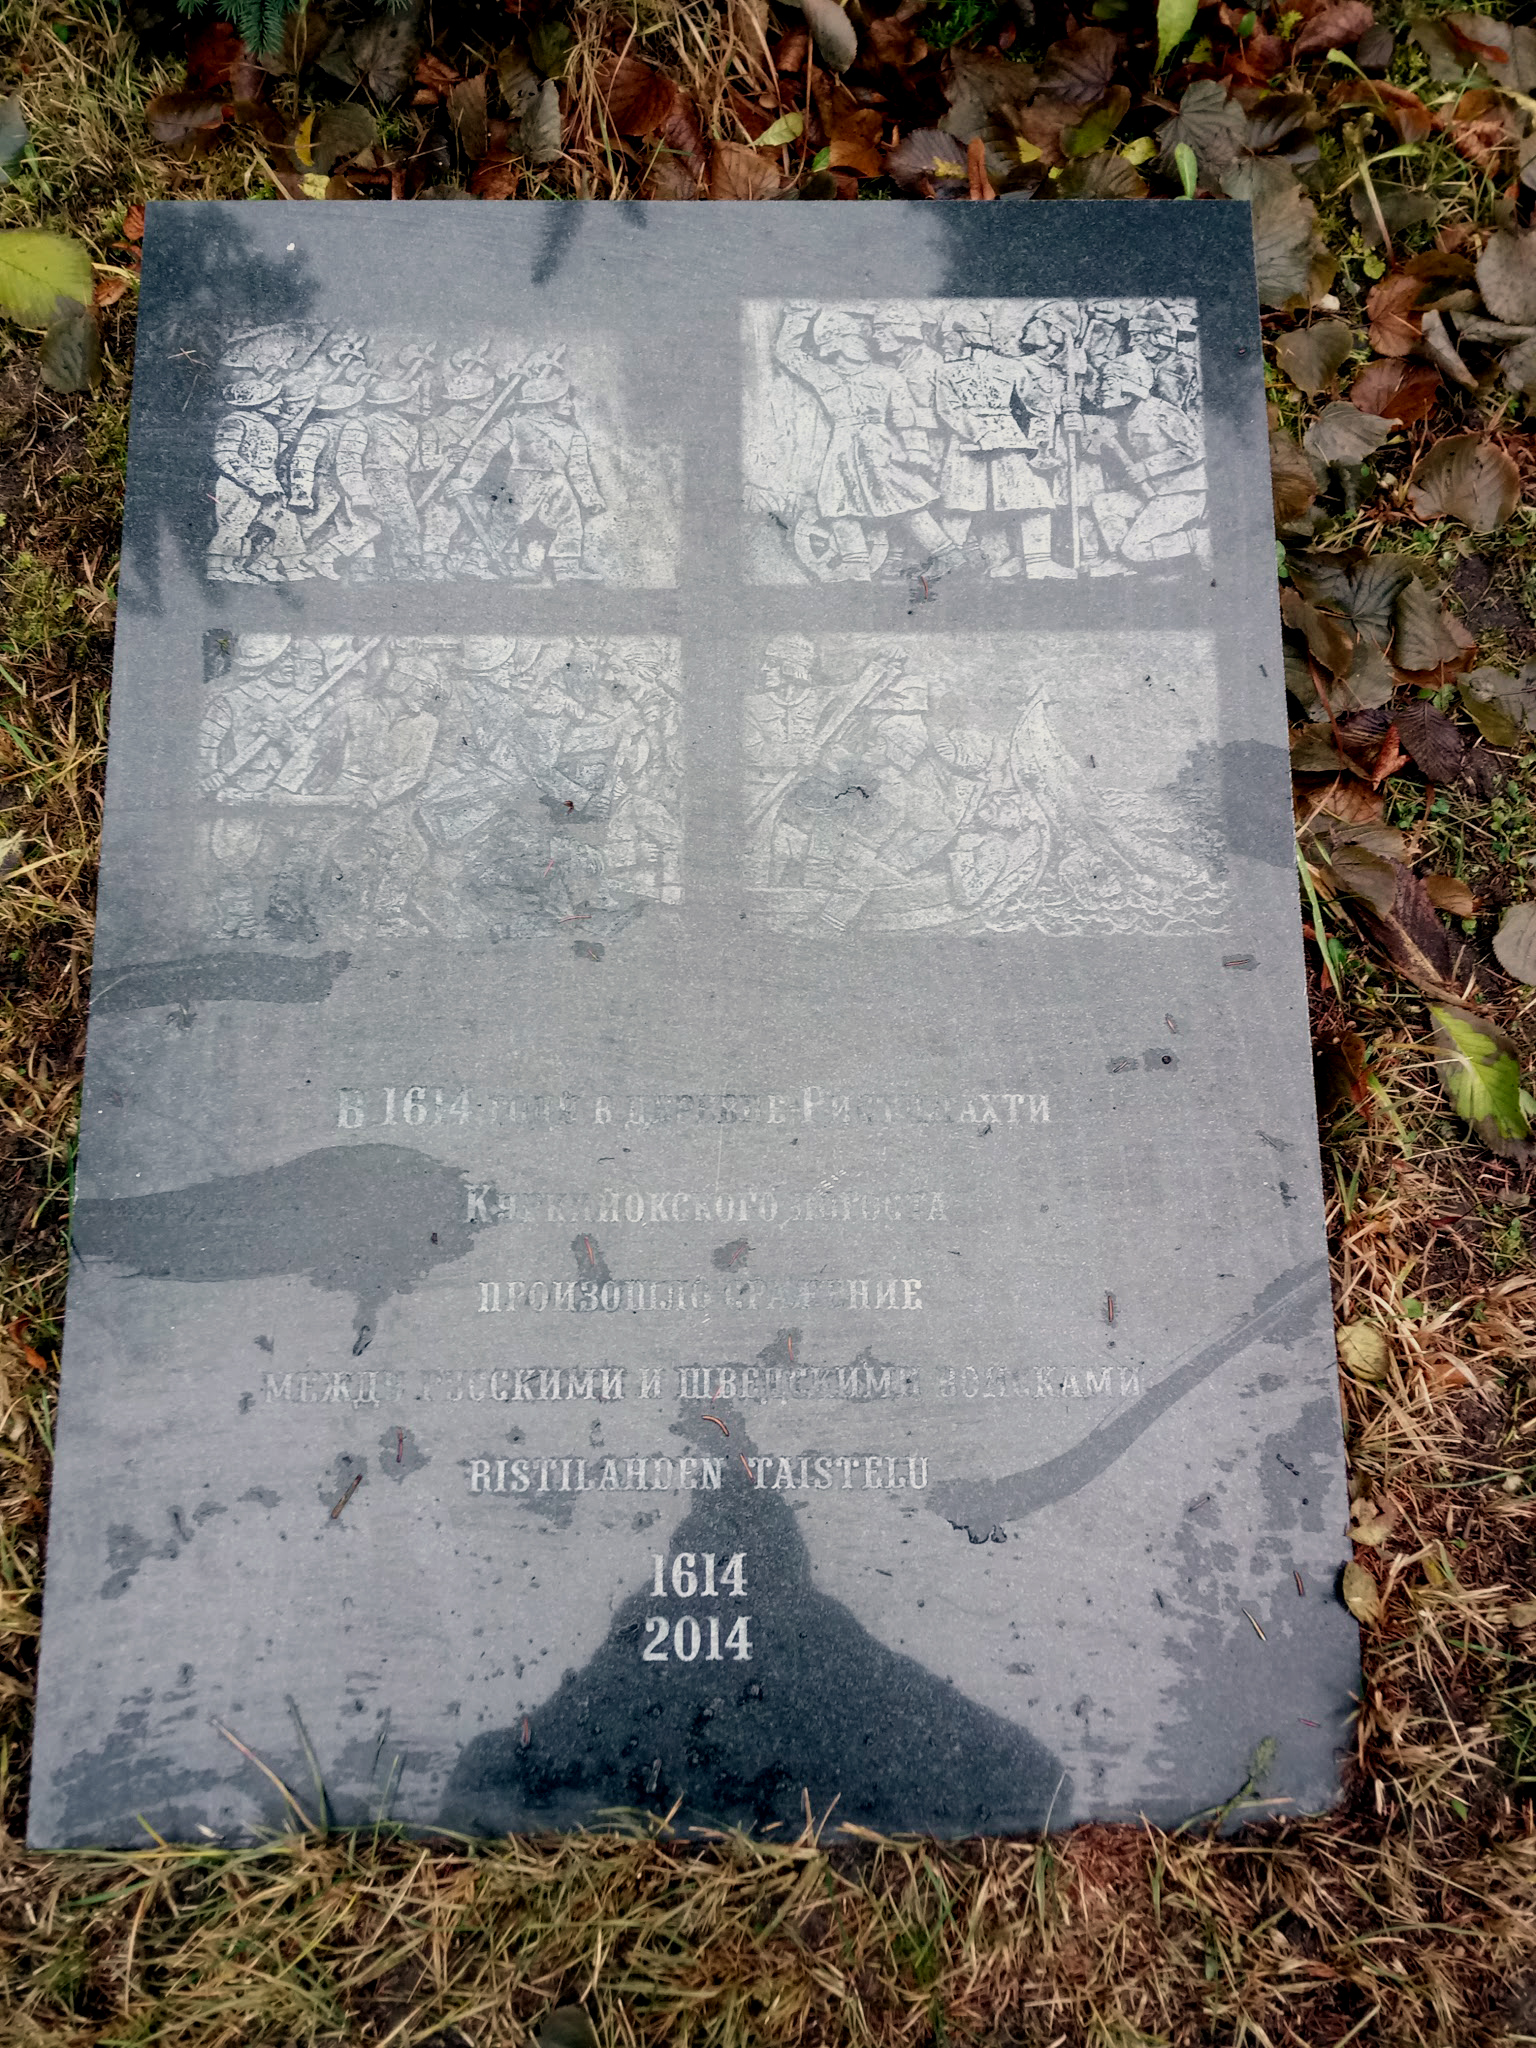 11 ноября 2017 года. Мемориальная доска битве при Ристилахти